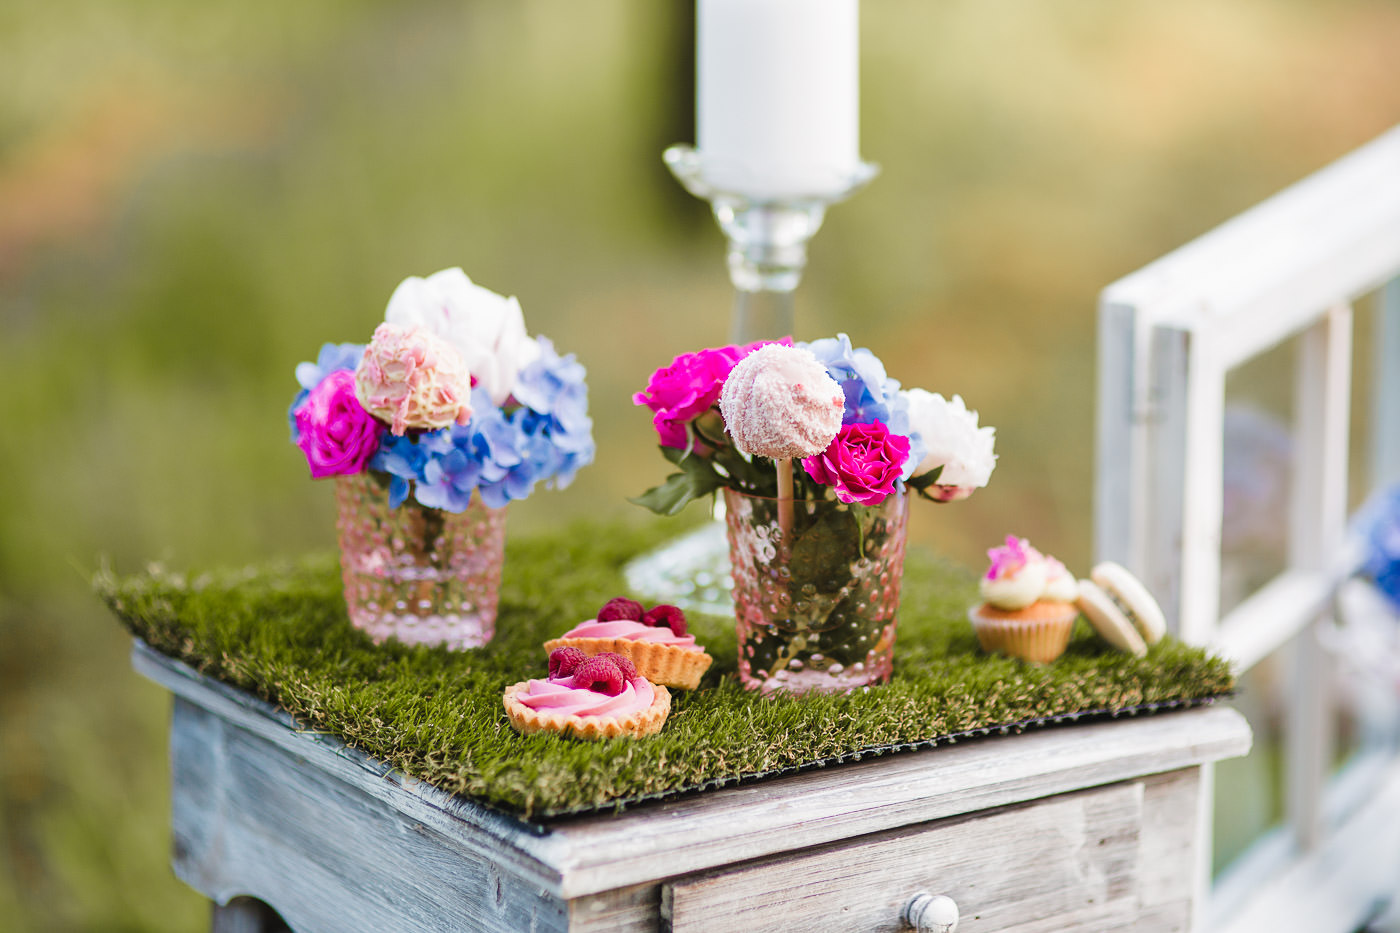 Susan&Sis decor – svadobna vyzdoba, dekorovanie- krasne jarne fotenie v sade – ruzovy candybar, ruze, romanticka vyzdoba